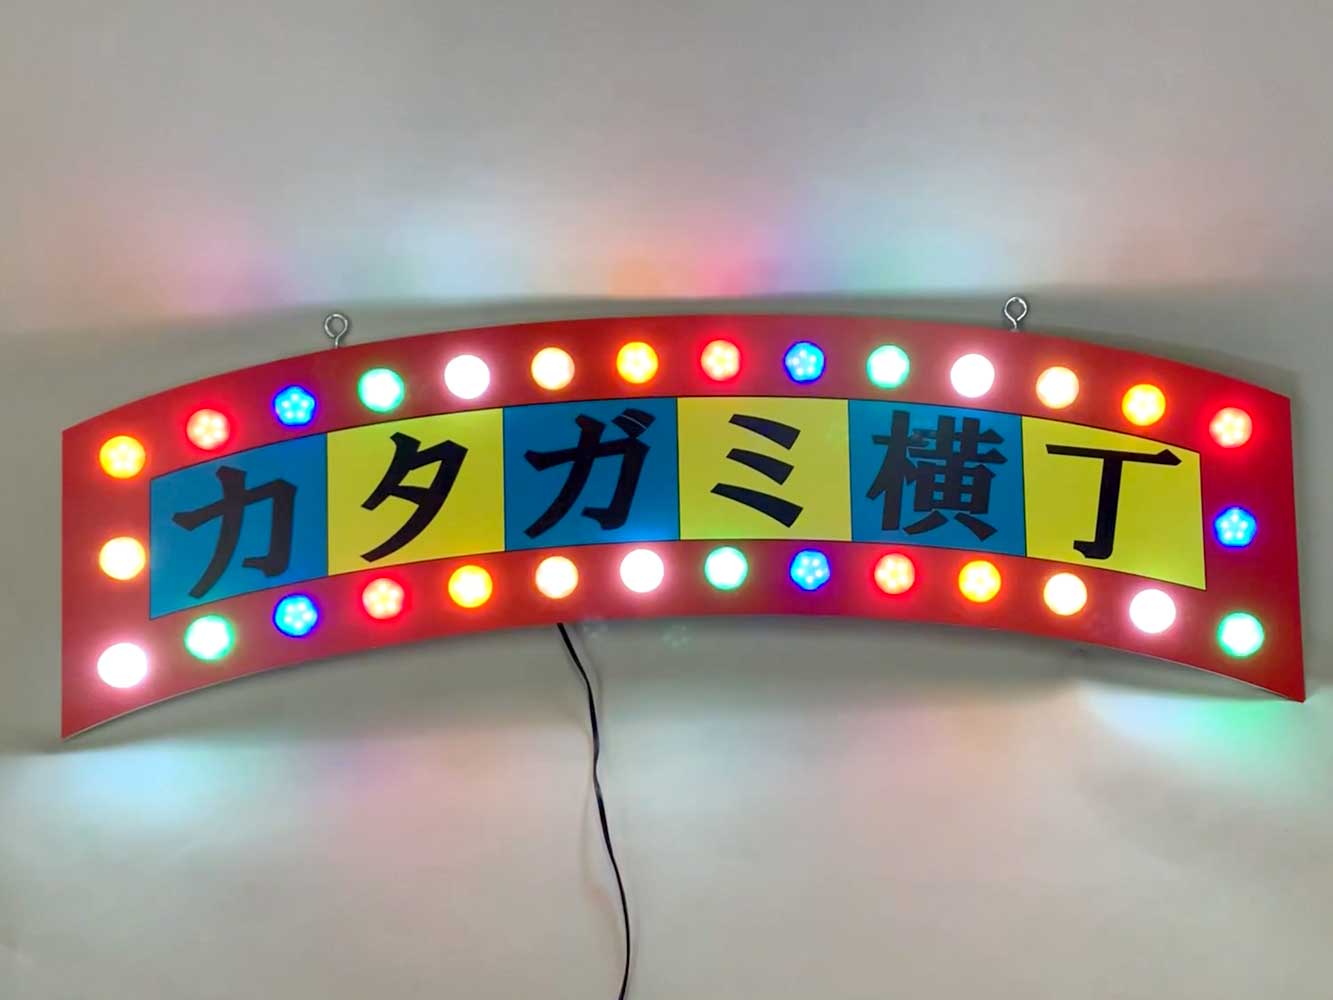 【フォームライト】ドン・キホーテ様のおしゃれなマーキーライトの屋内用LED看板製作事例をご紹介します。